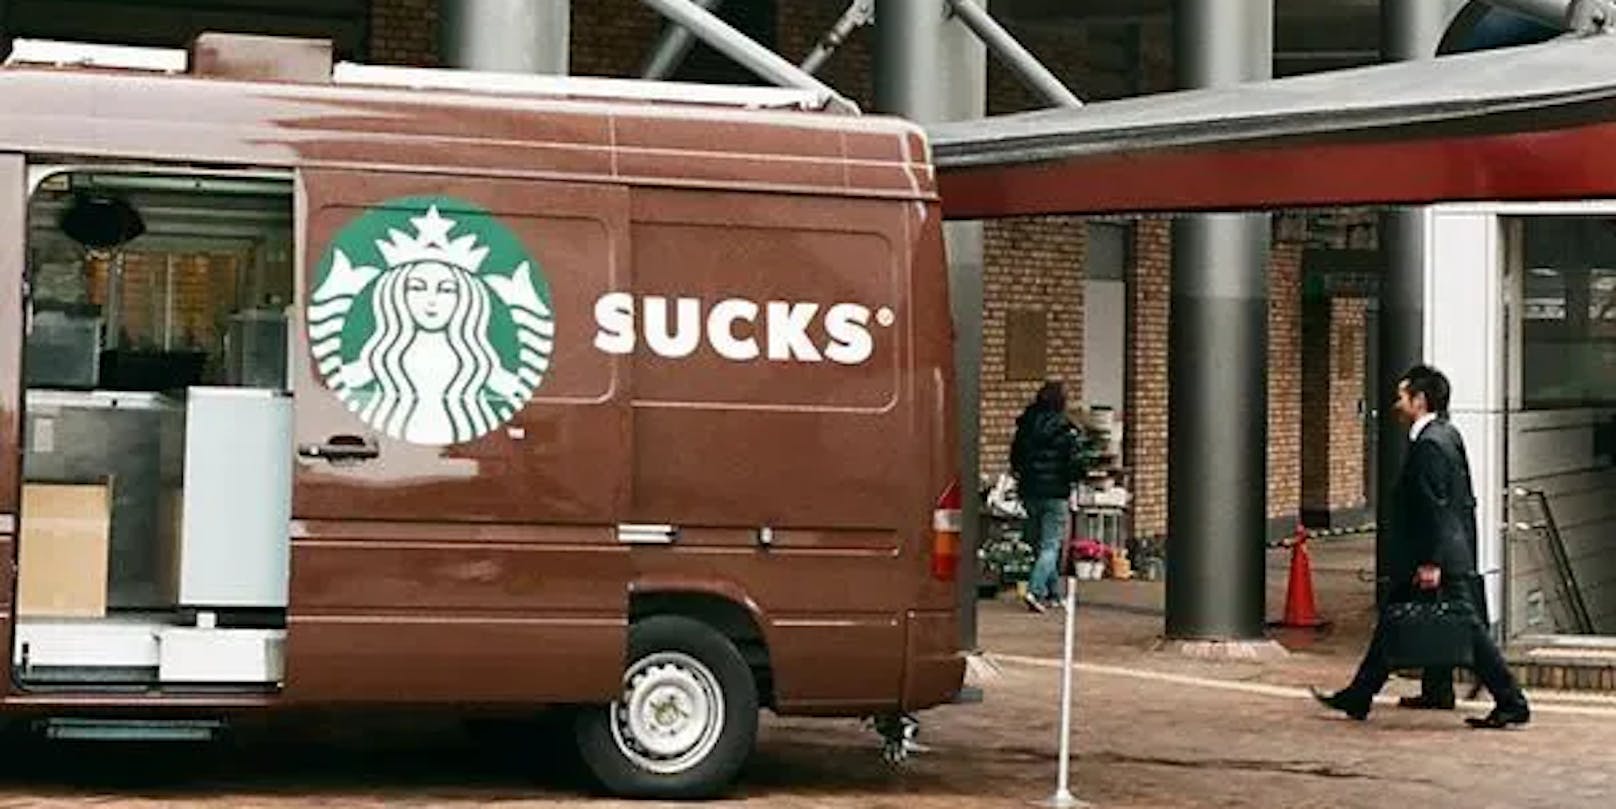 Bei dieser Aufschrift wurde wohl die Schiebetür nicht mit einberechnet. Aus Starbucks wird der wenig schmeichelhafte englische Begriff "sucks" (ist besch***en).